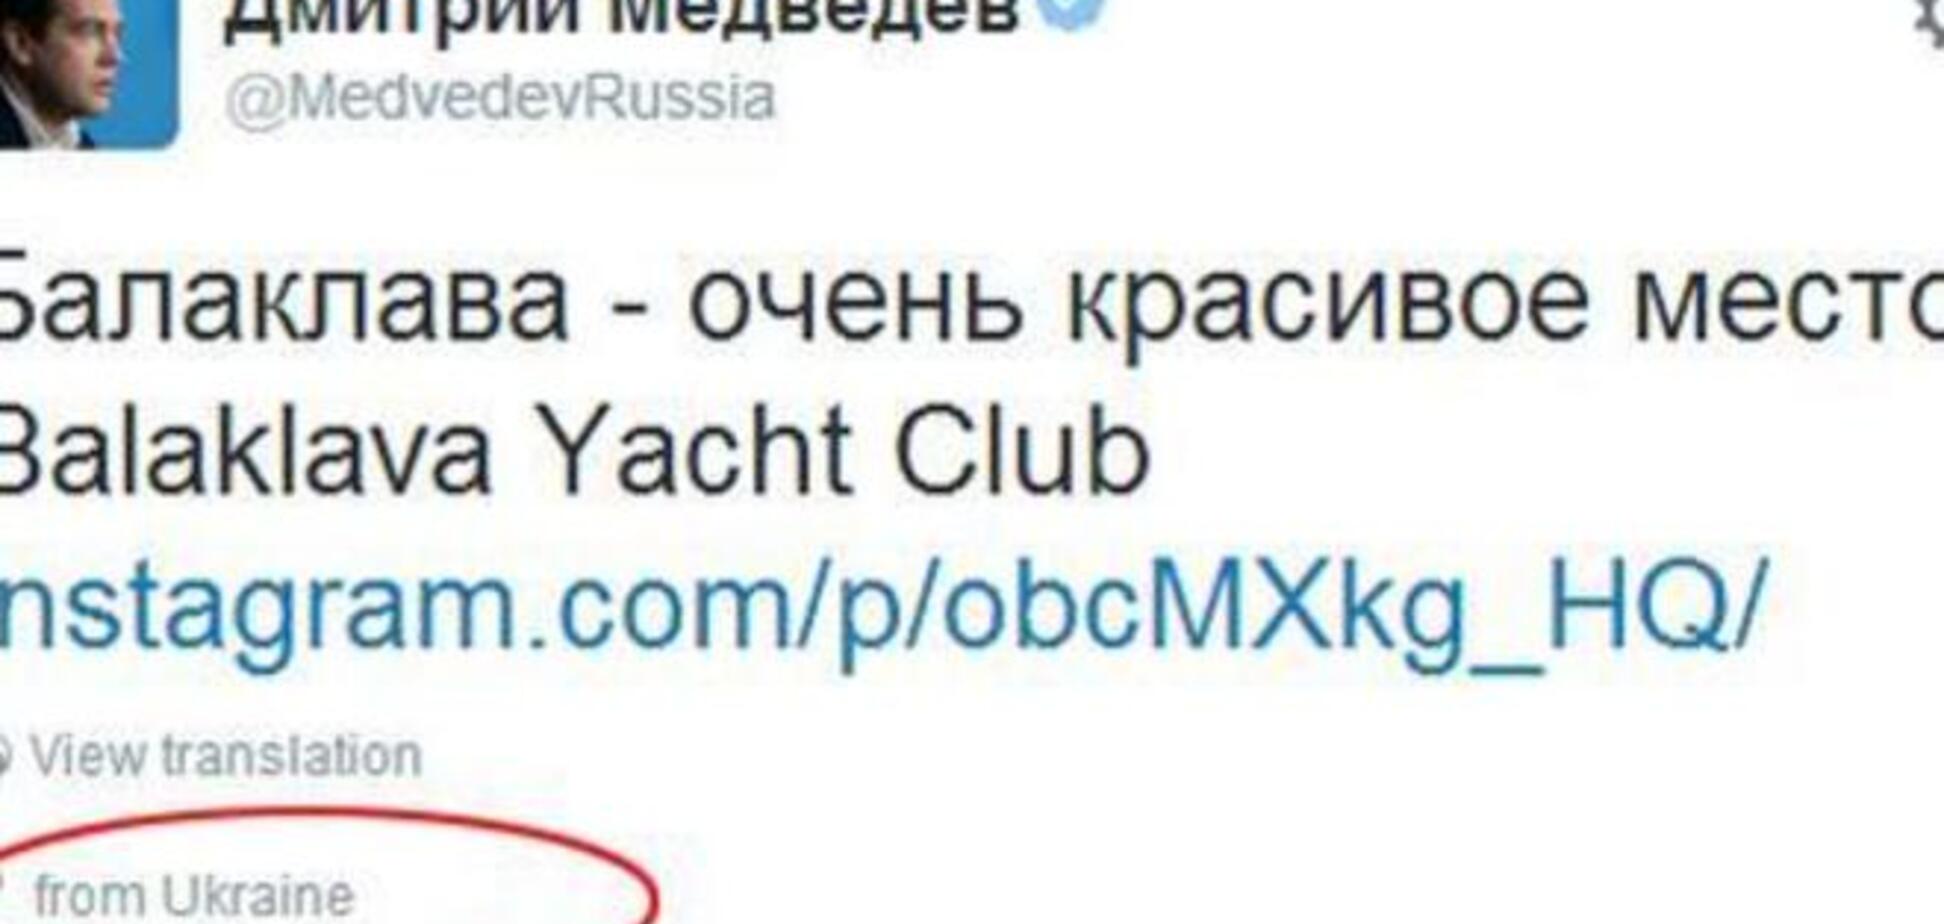 Медведев уже хвастается в сети, что Балаклава – красивое место